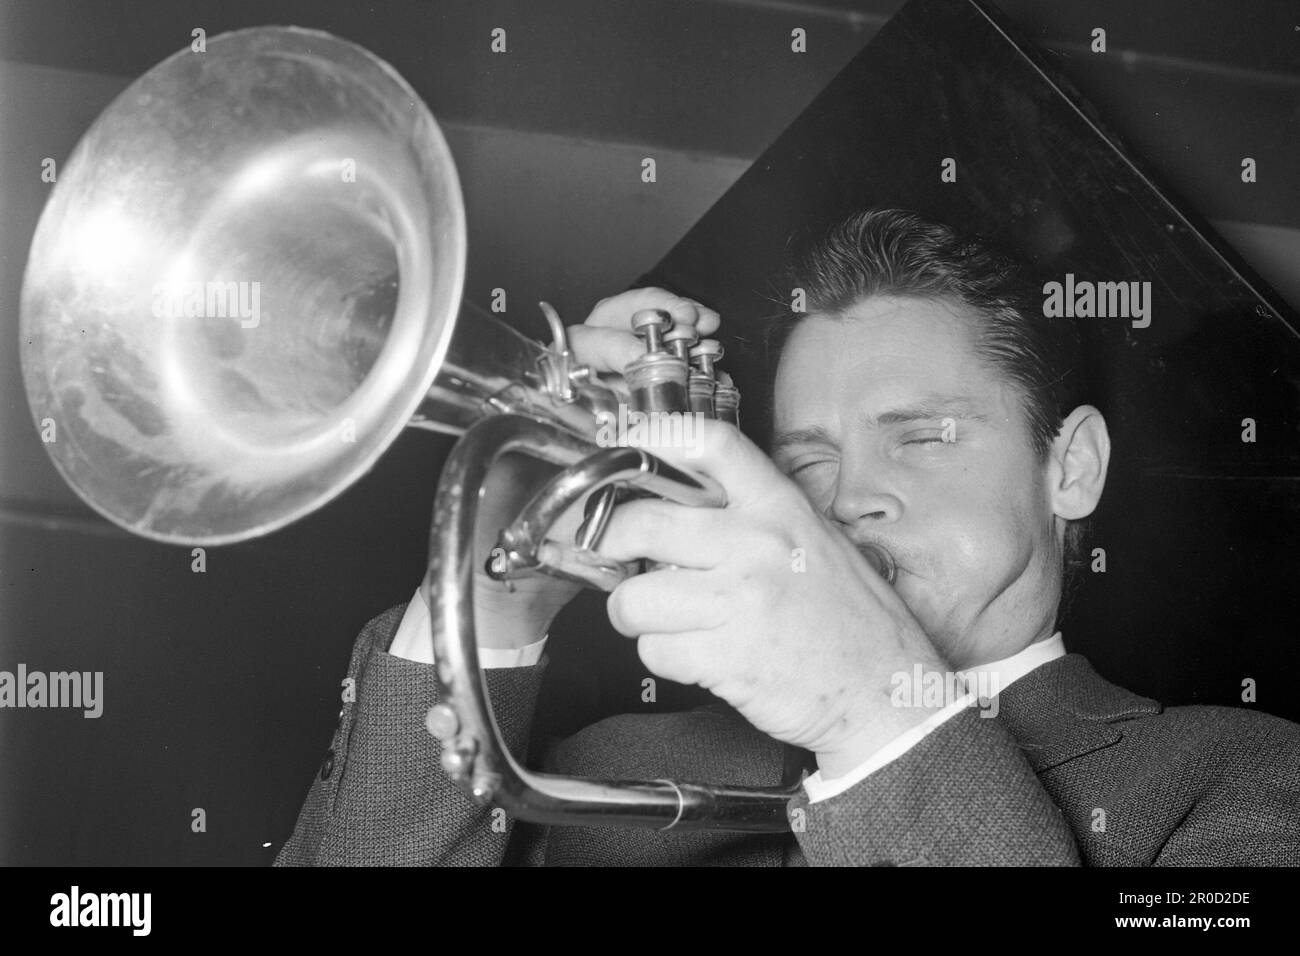 35 anni fa, il 13 maggio 1988, il trombettista Chet BAKER morì ad Amsterdam, Chet BAKER, USA, musicista, trombettista, jazz, il cui vero nome è Chesney Henry Baker Jr., qui al suo concerto ad Amburgo, 23 gennaio 1964, SW -Recording, ? Foto Stock